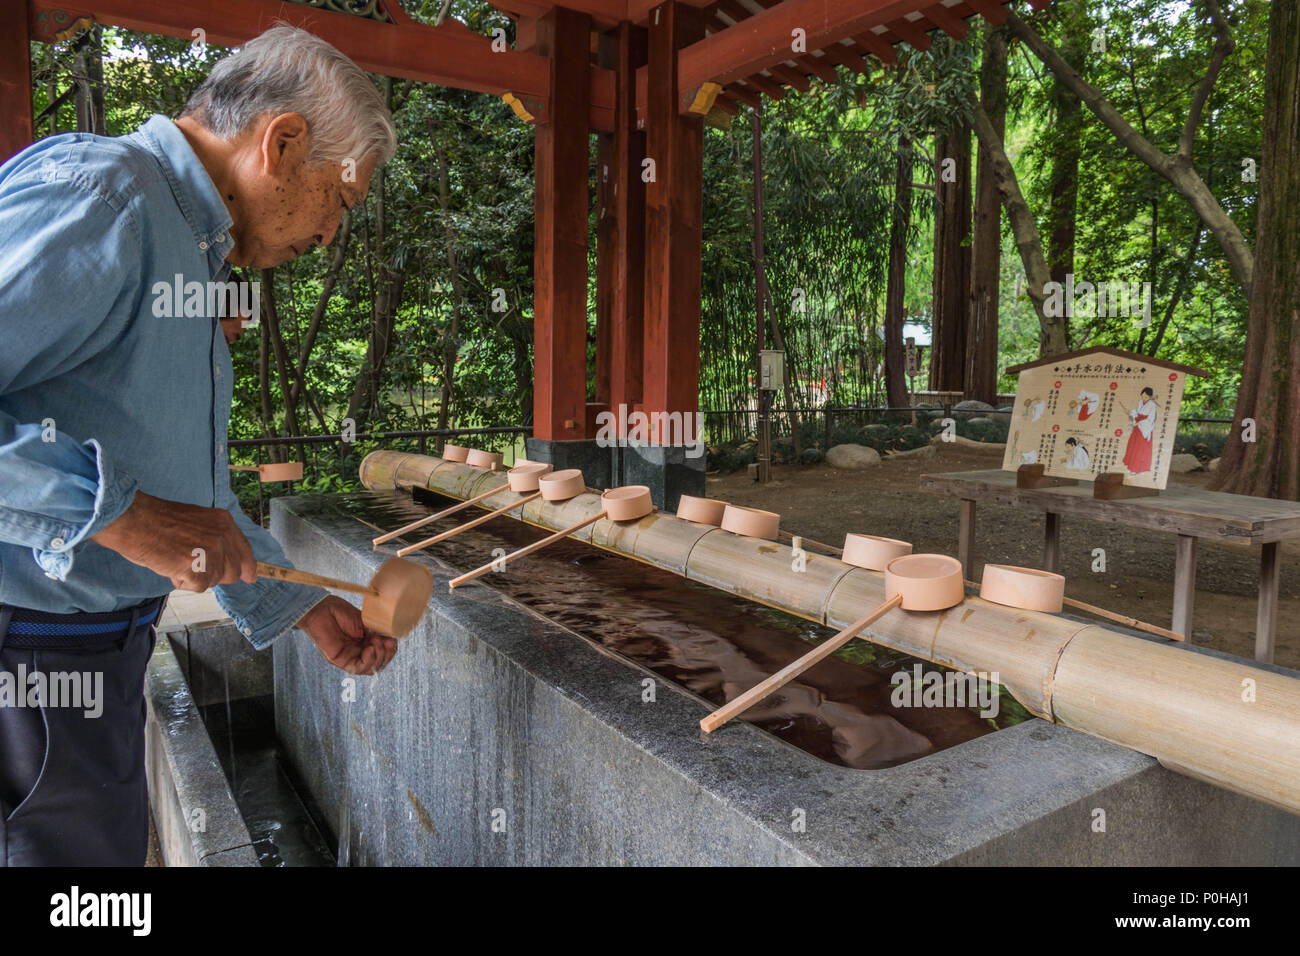 Vor der Eingabe eines Shinto Schrein Besucher selbst mit Wasser an der temizuya reinigen. Ein Mann wäscht seine Hände mit Pendelarm, Hikawa Jinja Schrein, Omiya Stockfoto